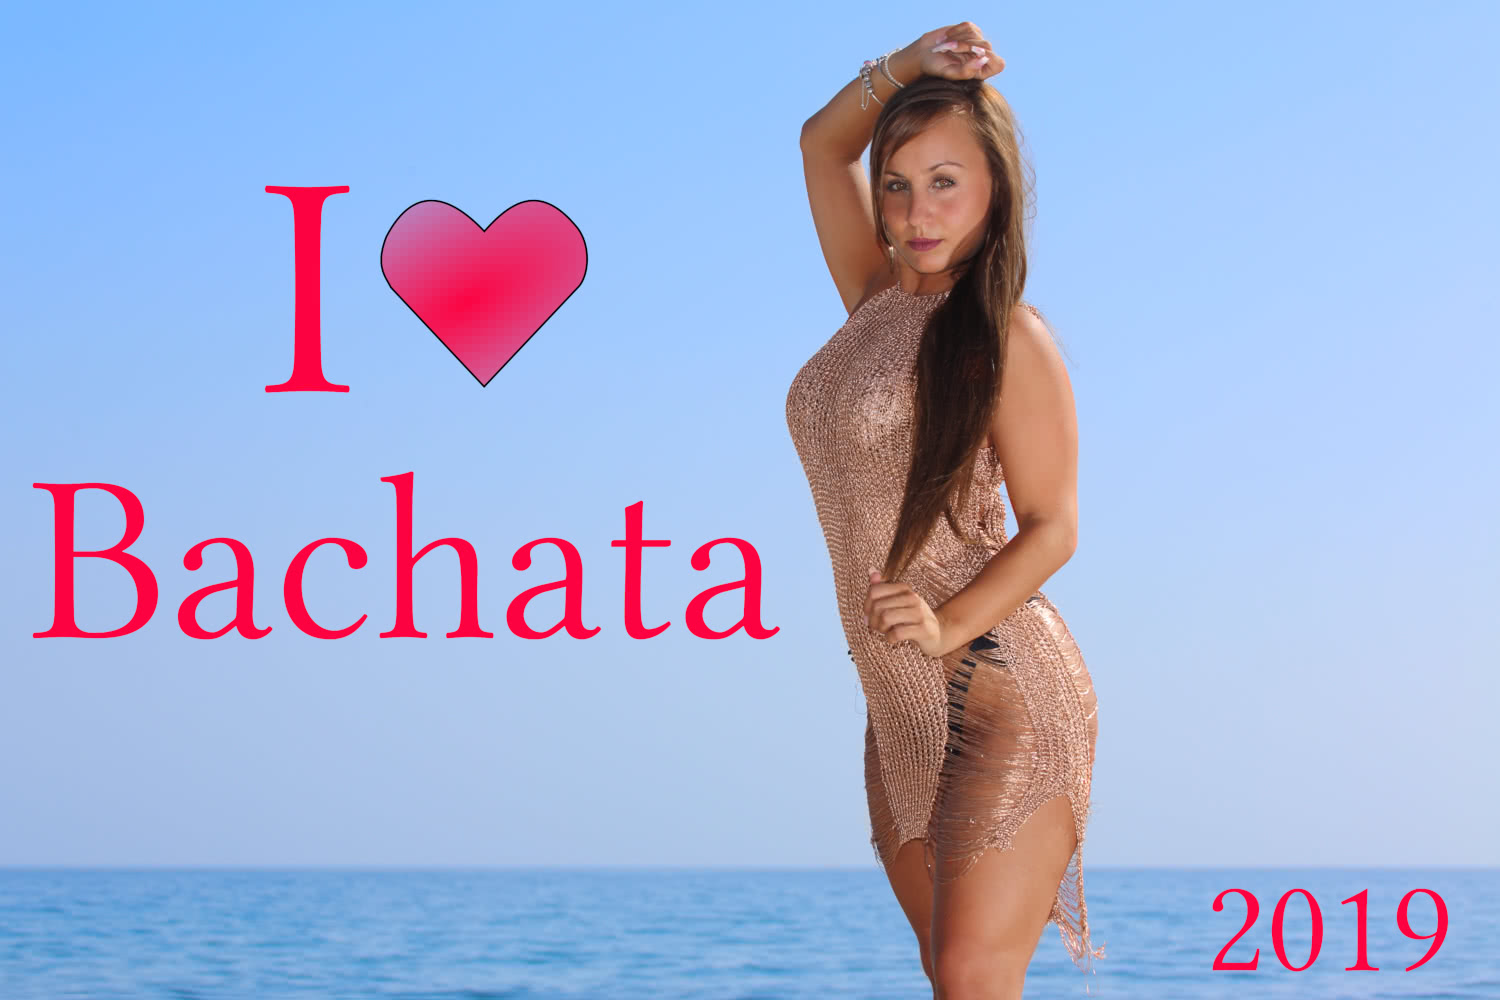 I love Bachata